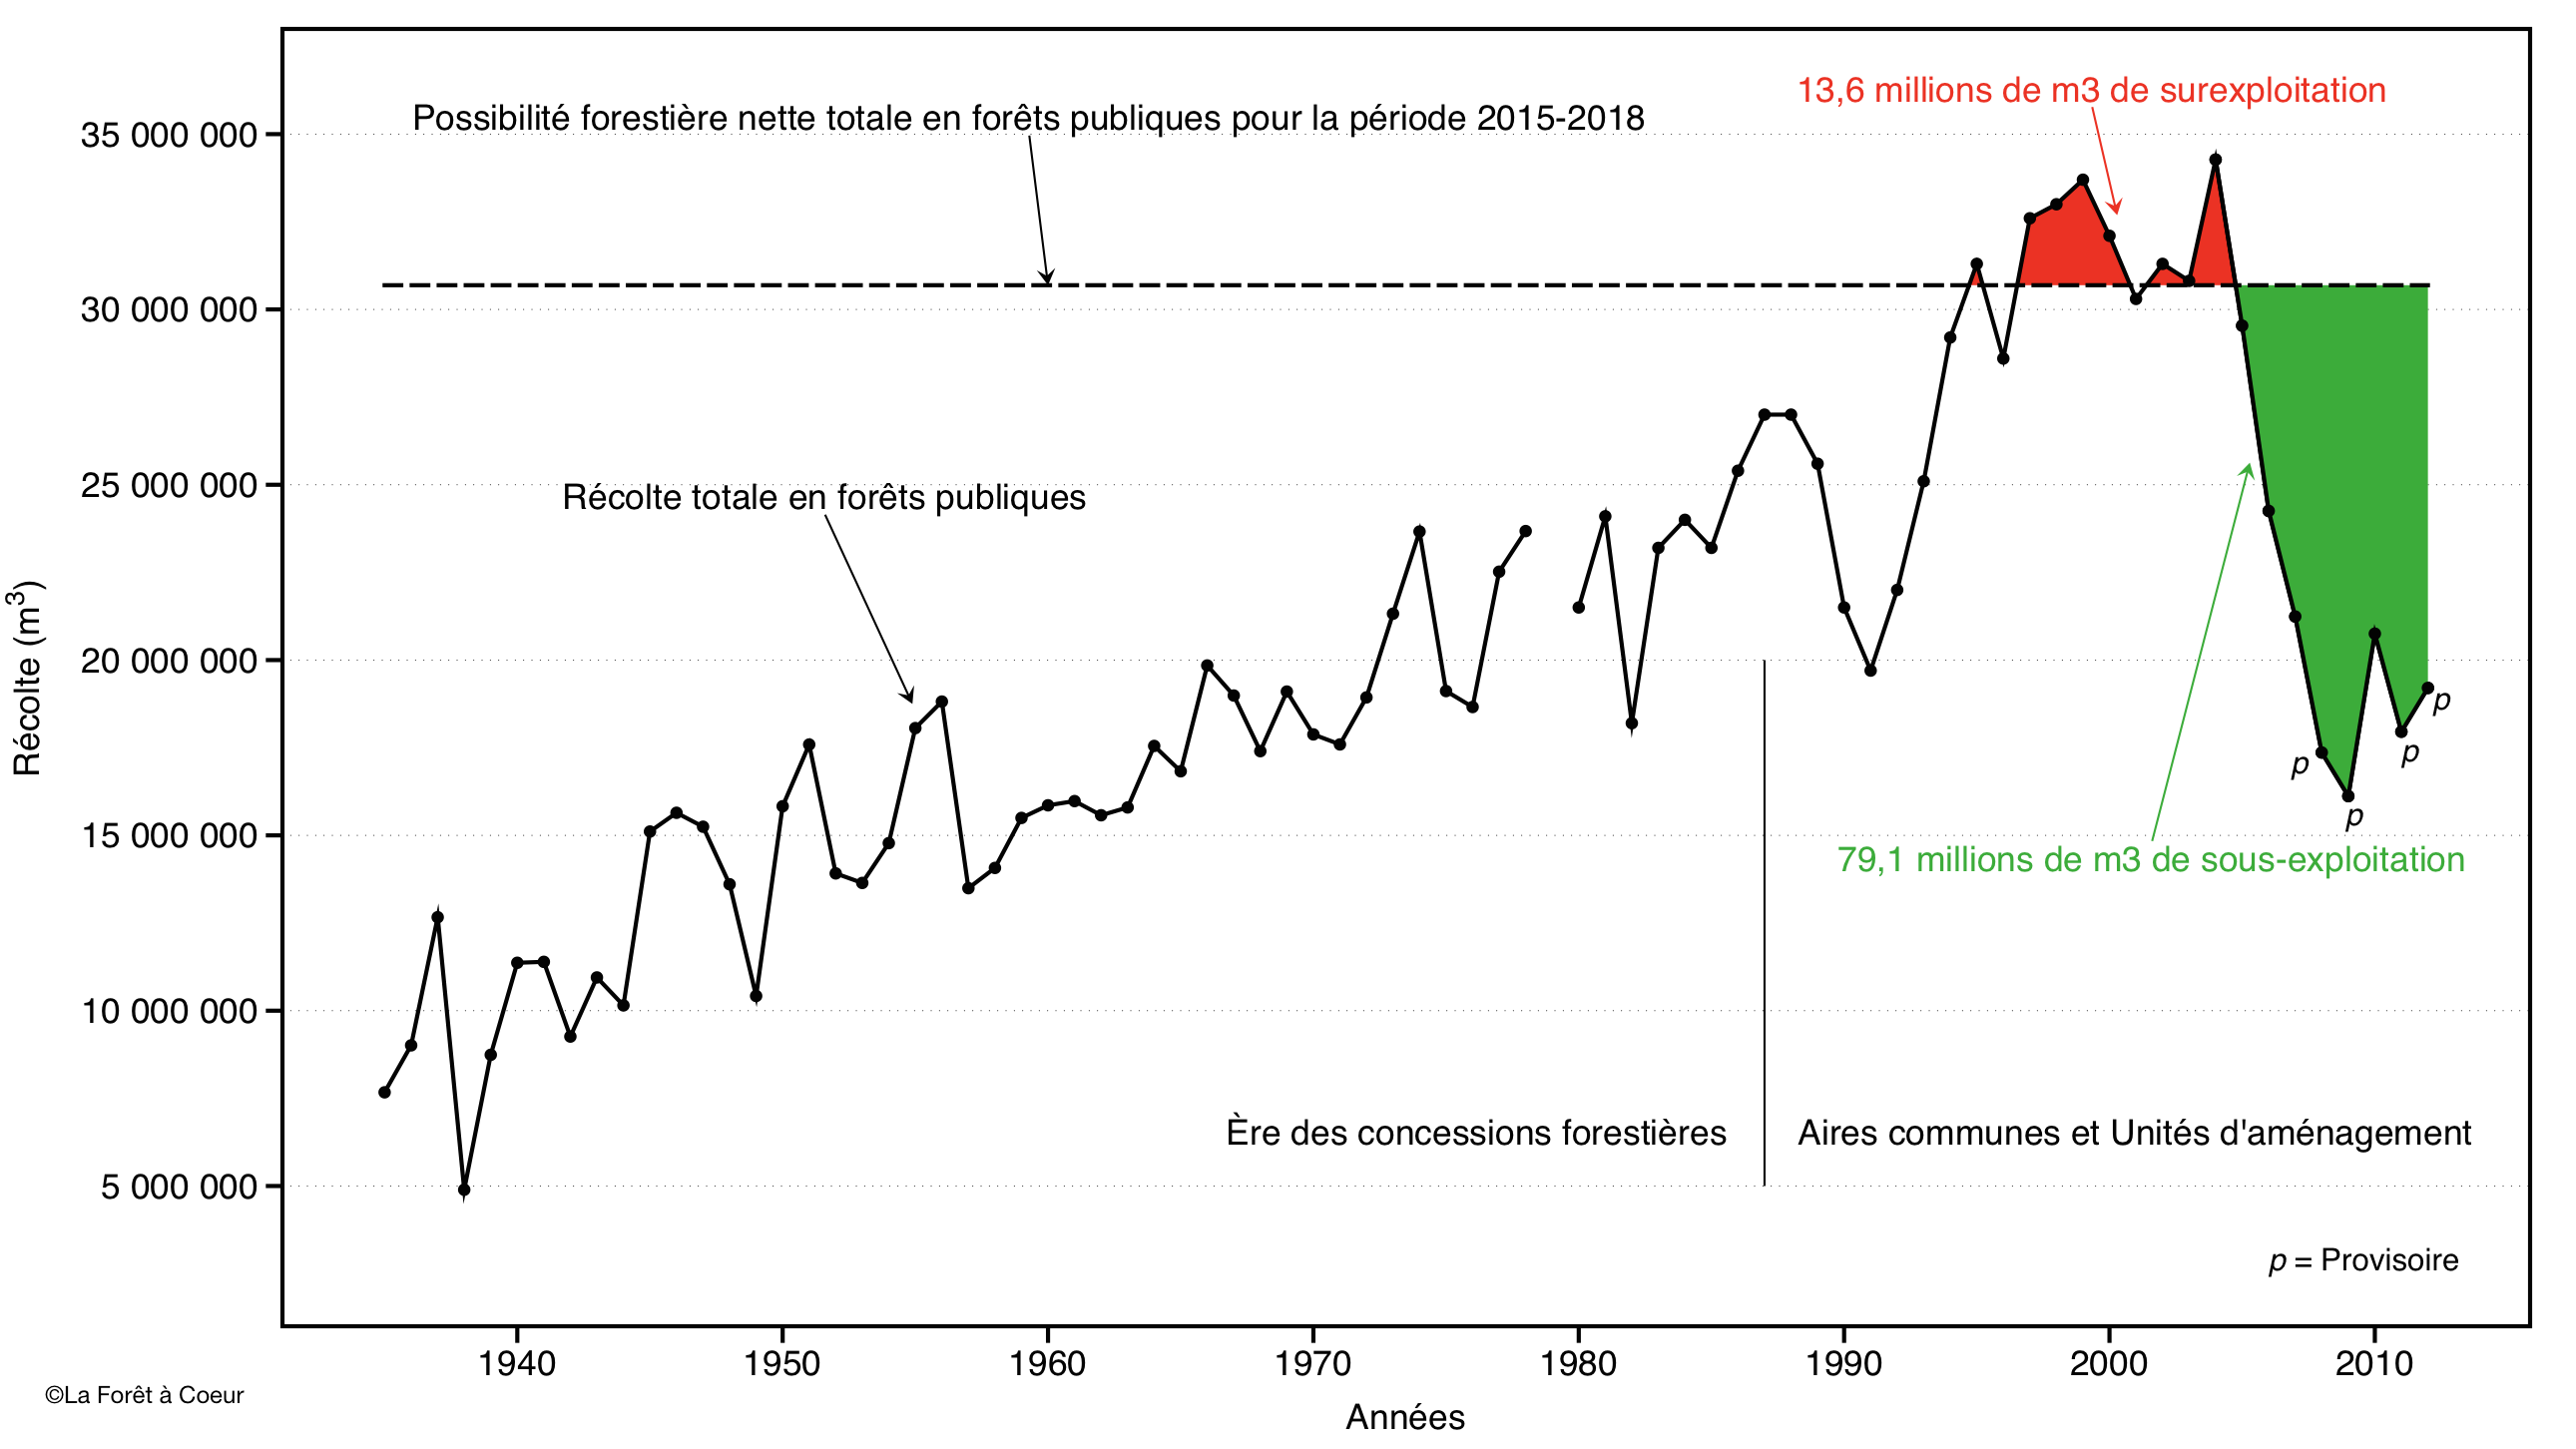 Figure: Évolution de la récolte totale en forêt publique québécoise entre 1935 et 2012. Superposée à ces valeurs de façon rétroactive, la possibilité forestière nette totale des forêts publiques québécoises pour la période 2015-2018. 